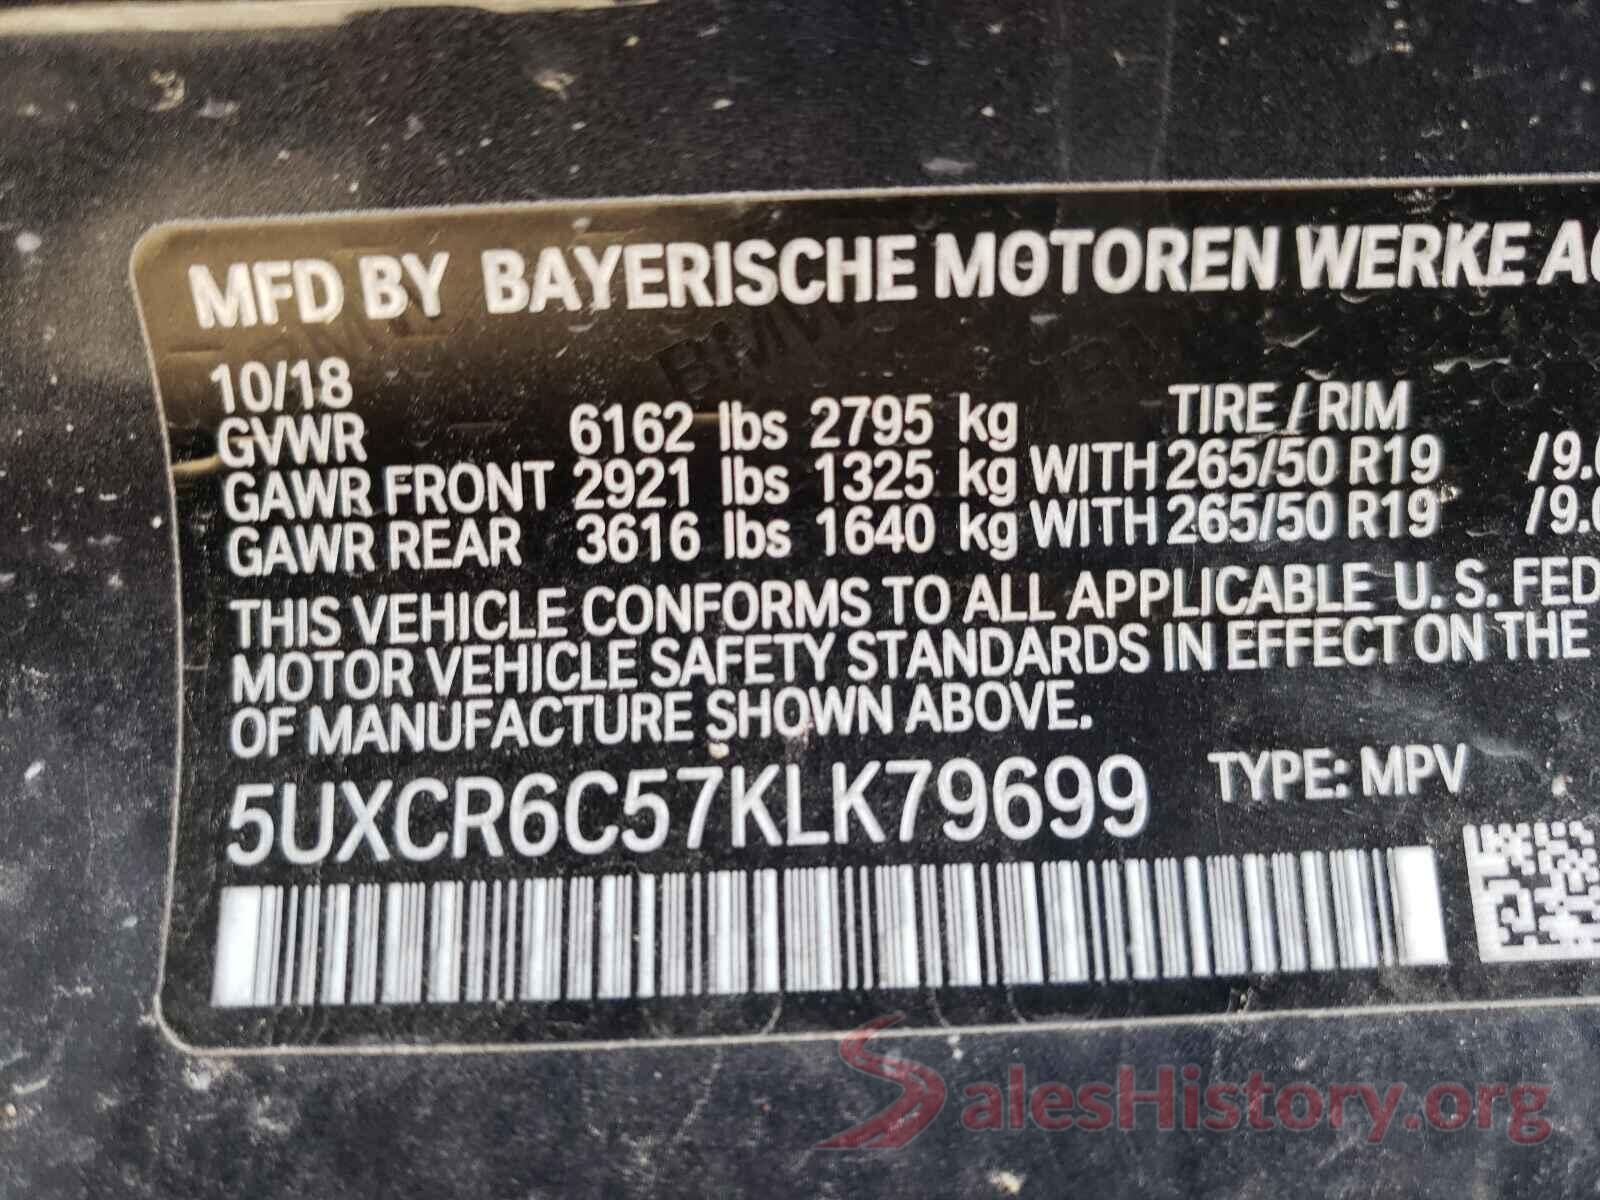 5UXCR6C57KLK79699 2019 BMW X5